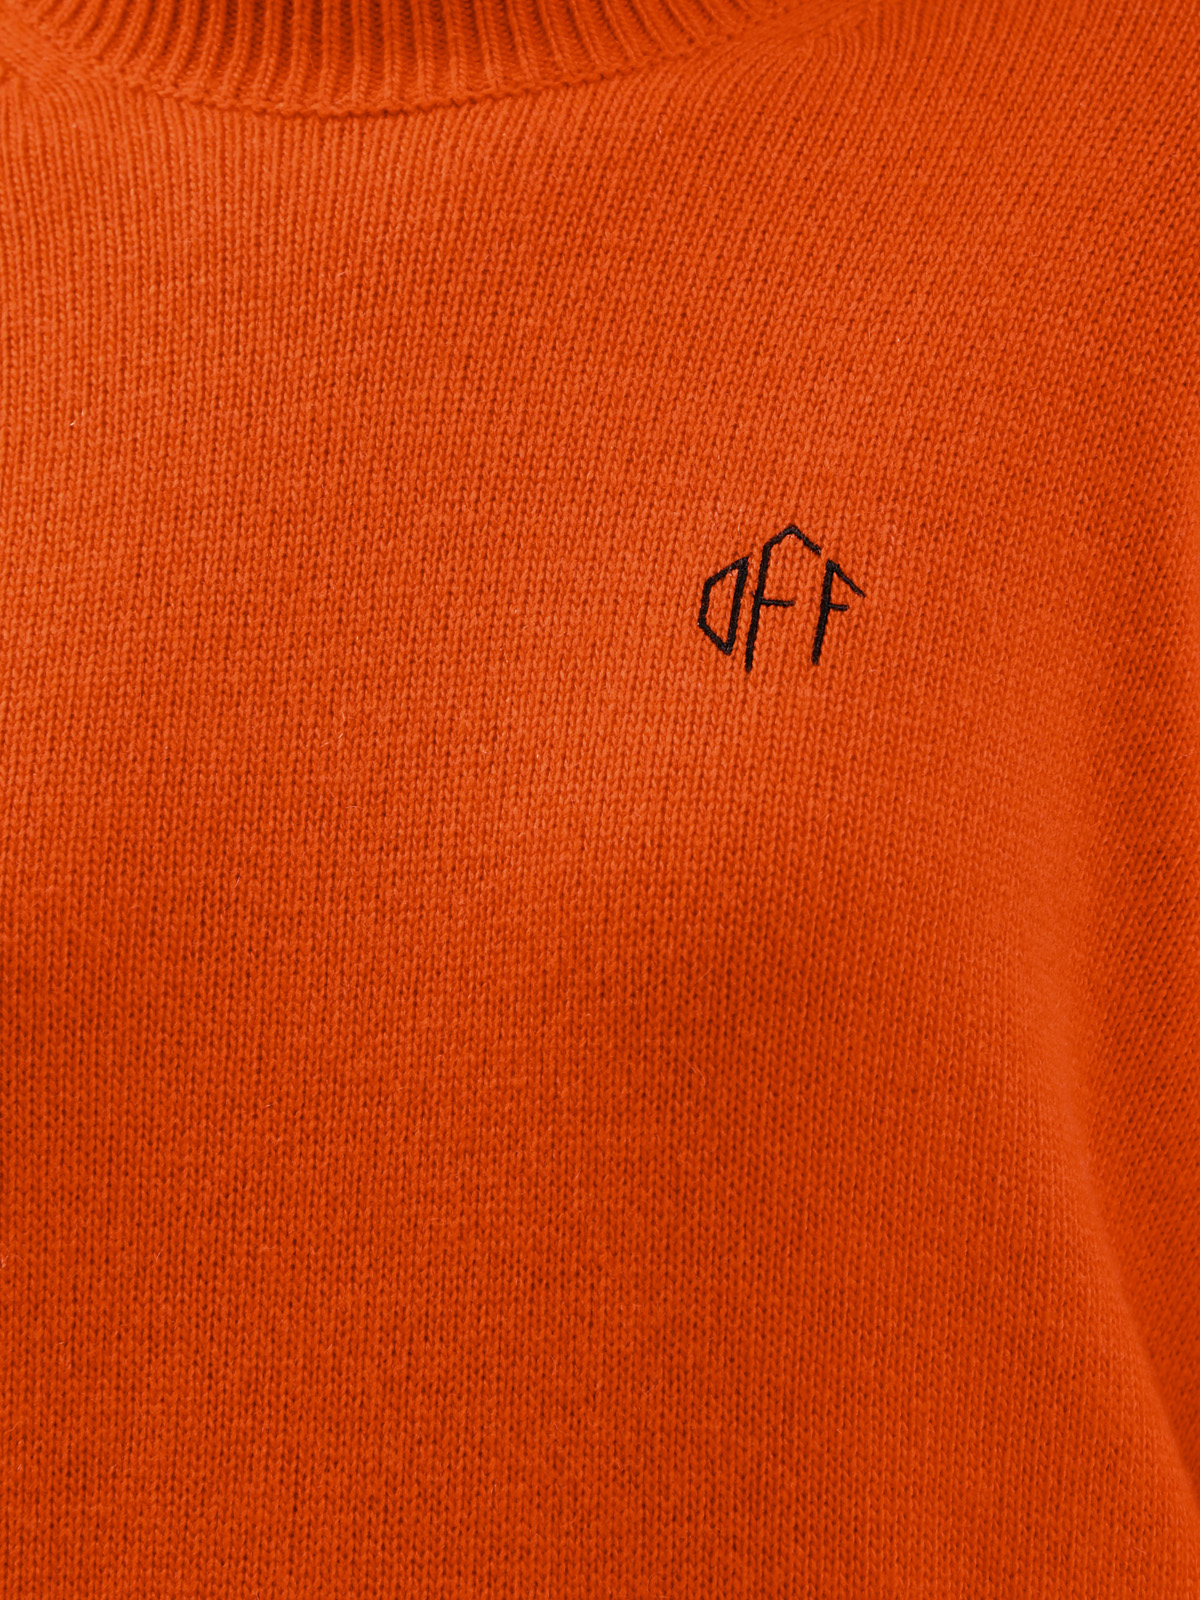 Пуловер свободного кроя с элементами английской вязки OFF-WHITE, цвет красный, размер 40;38;44 - фото 5